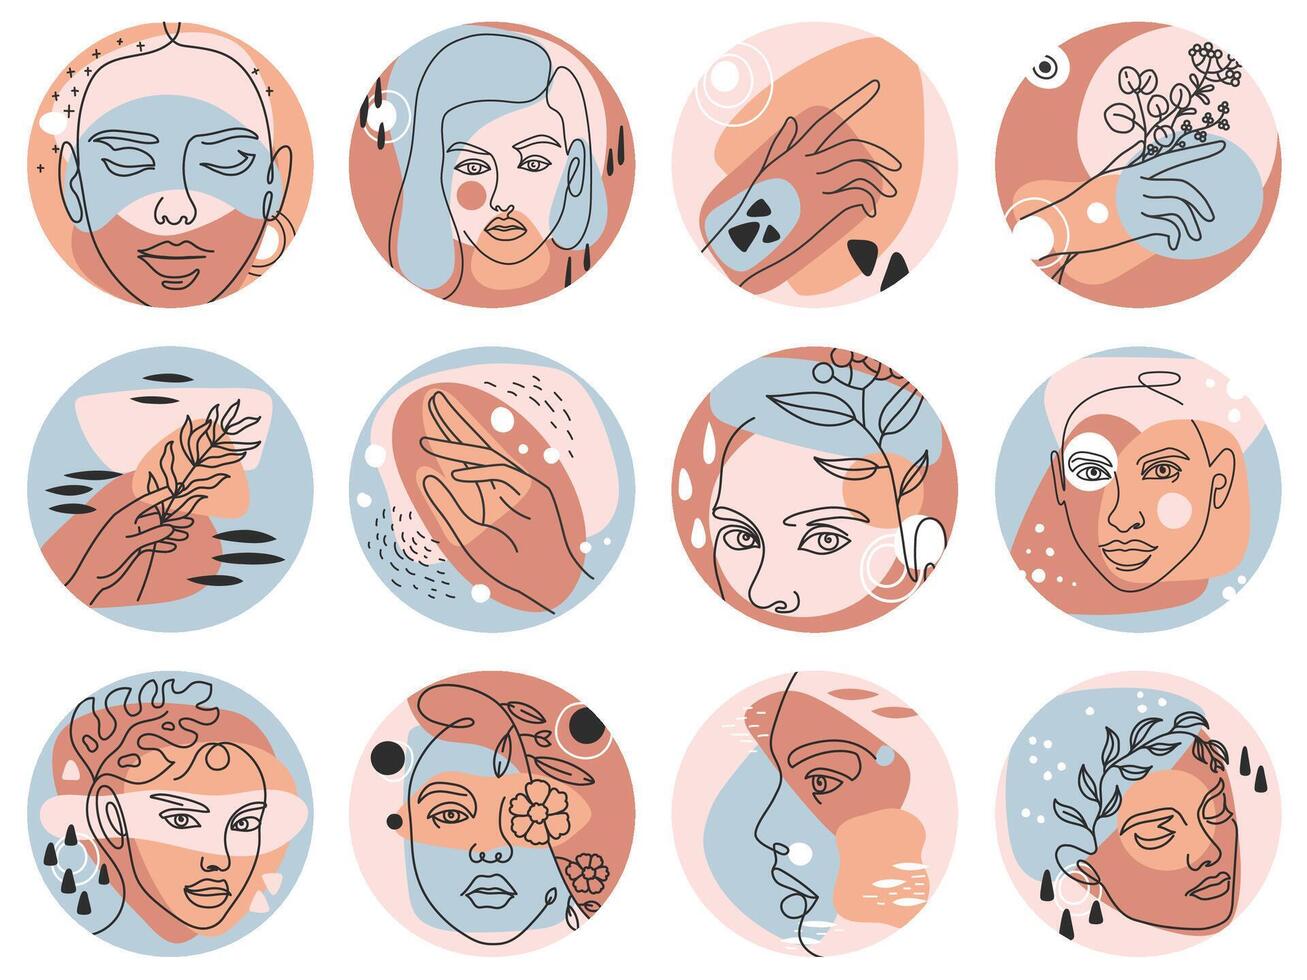 sociaal media hoogtepunt dekt. abstract boho verhaal pictogrammen voor schoonheid bloggers met vrouw gezichten, handen en bloemen, ronde vormig vector reeks